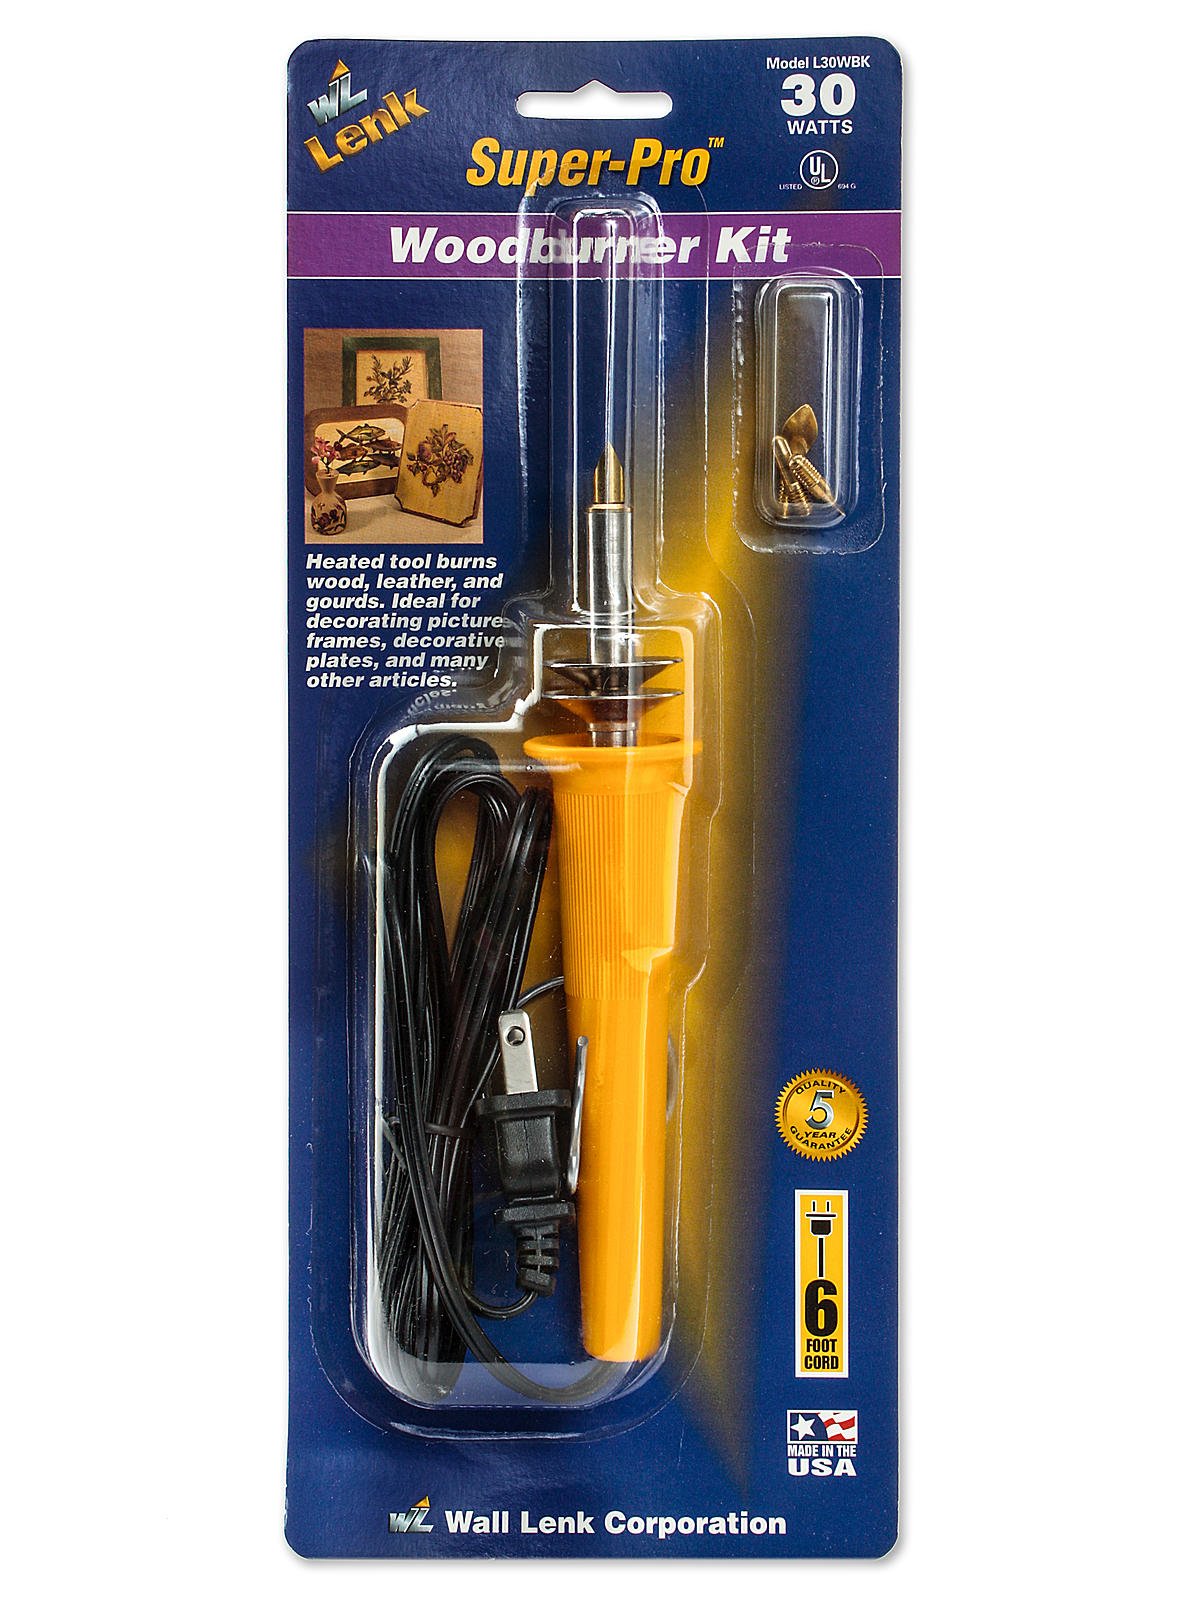 Super-Pro Woodburning Kit